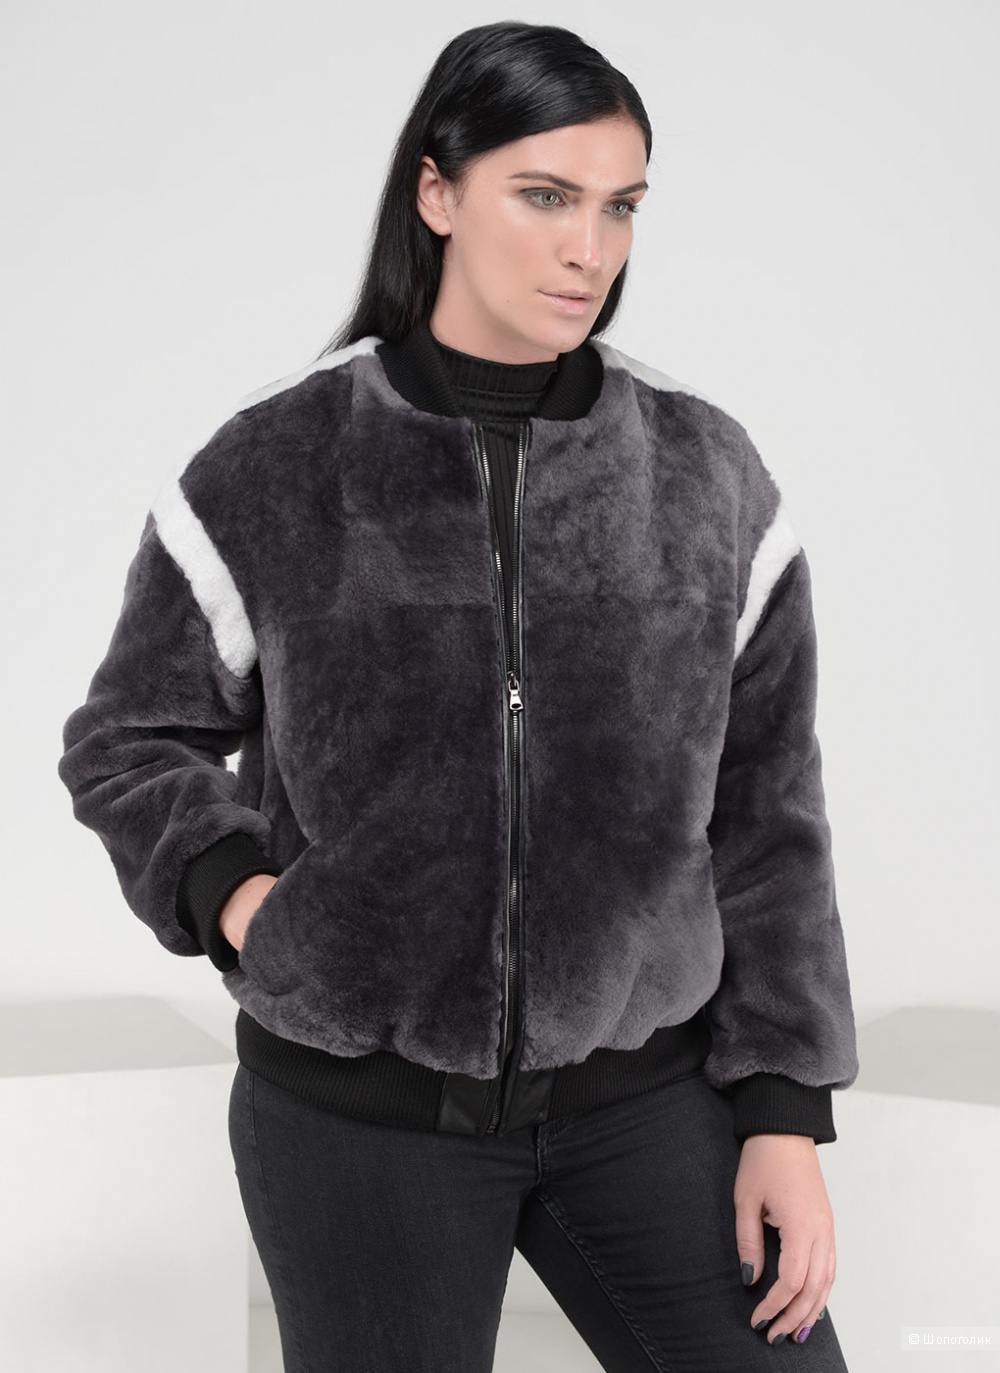 Меховая куртка, бренд Российский мех, 44 размера